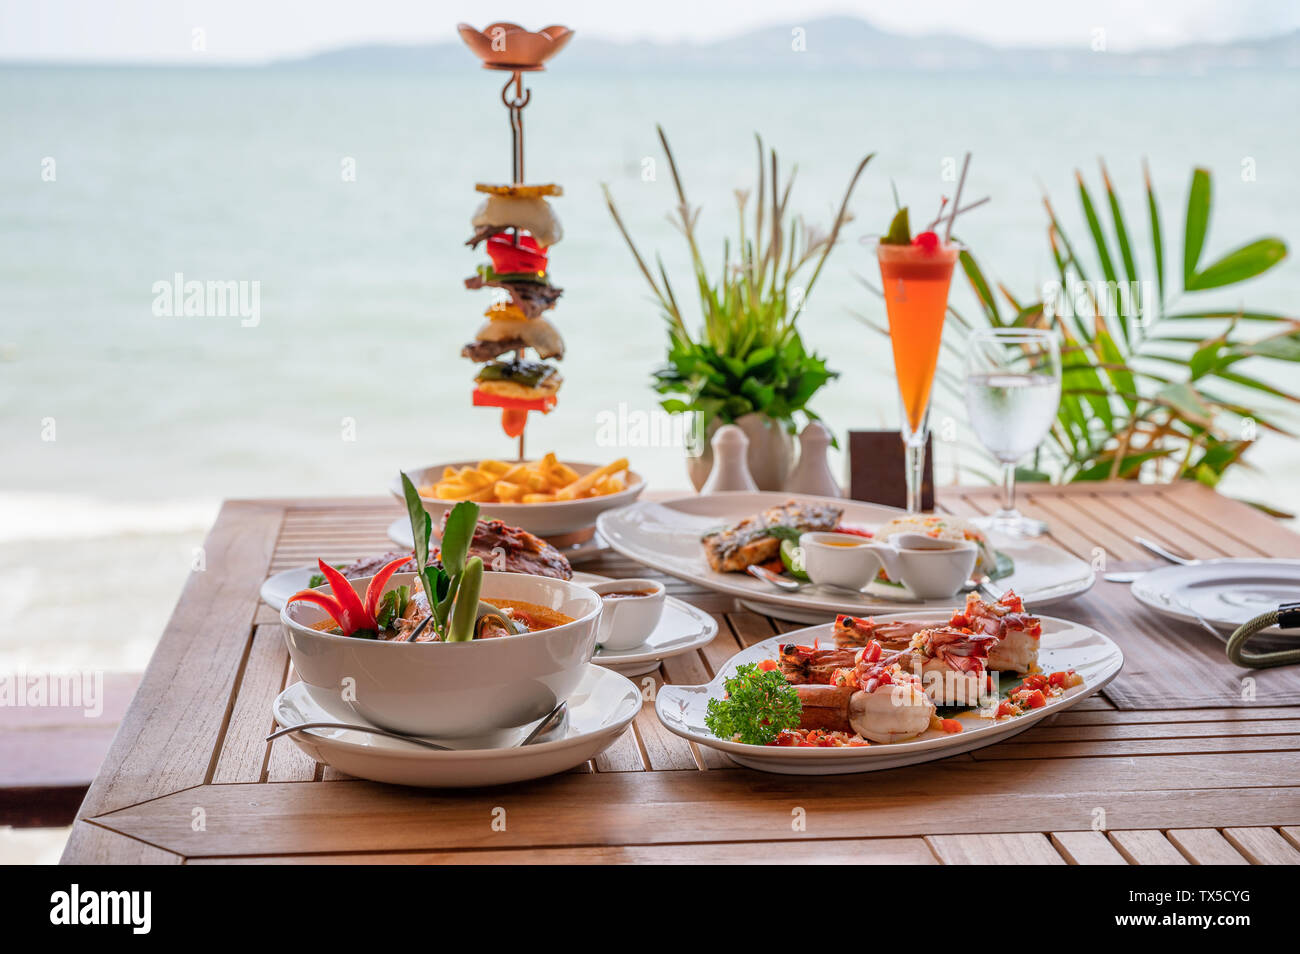 Variété d'aliments, des côtes de porc rôti, steak de boeuf, fruits de mer et soupe épicée sur table à manger en mer tropicale Banque D'Images